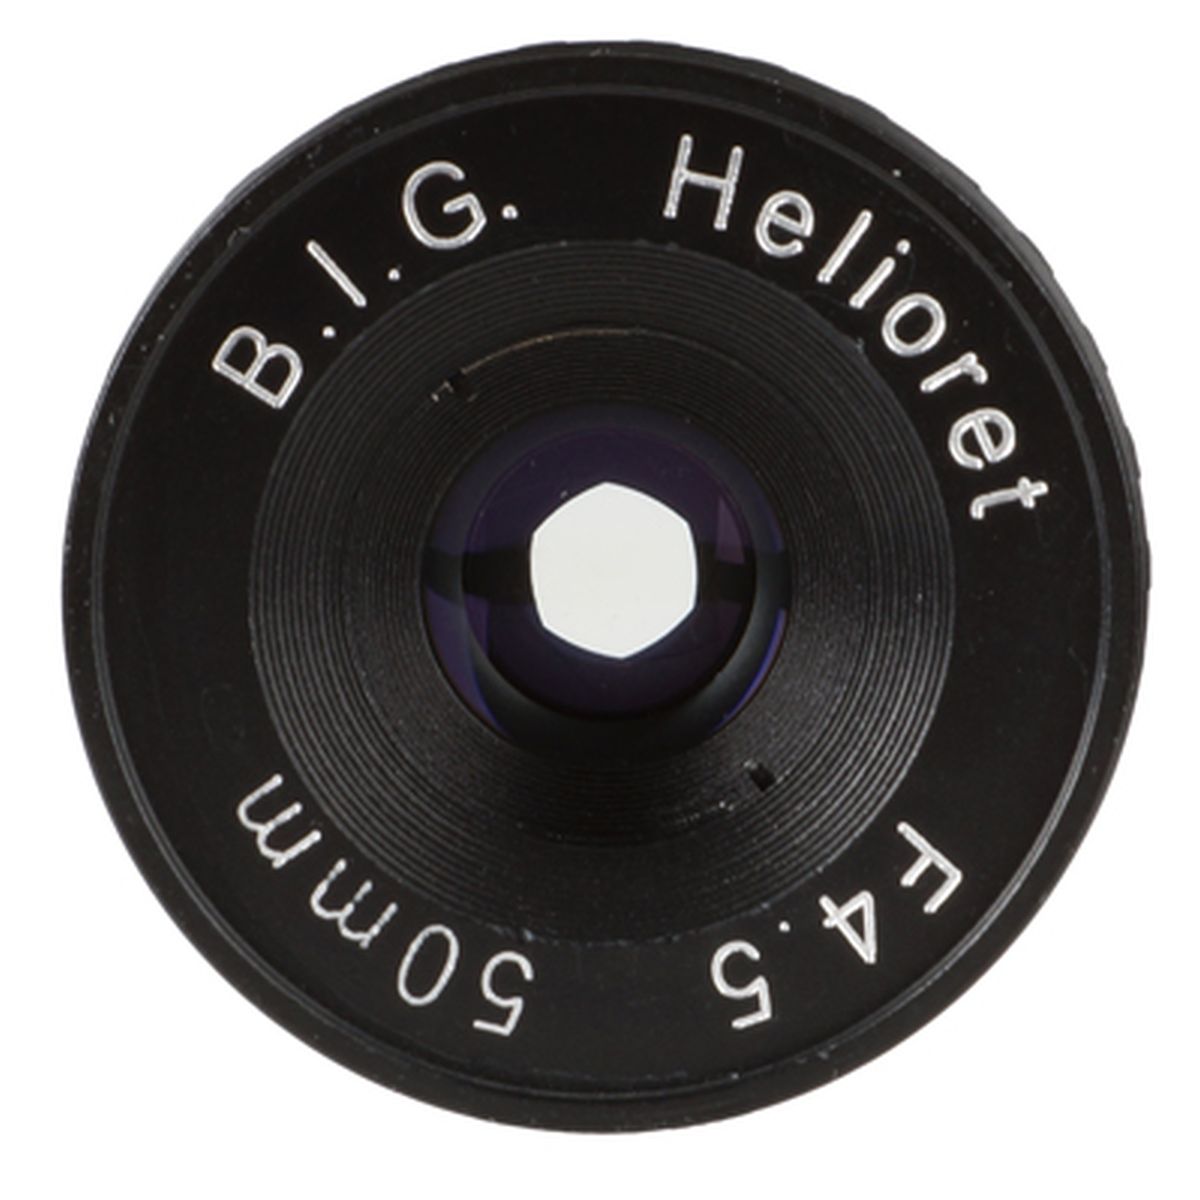 B.I.G. Helioret 50 mm 1:4,5 Makro Objektivkopf M39